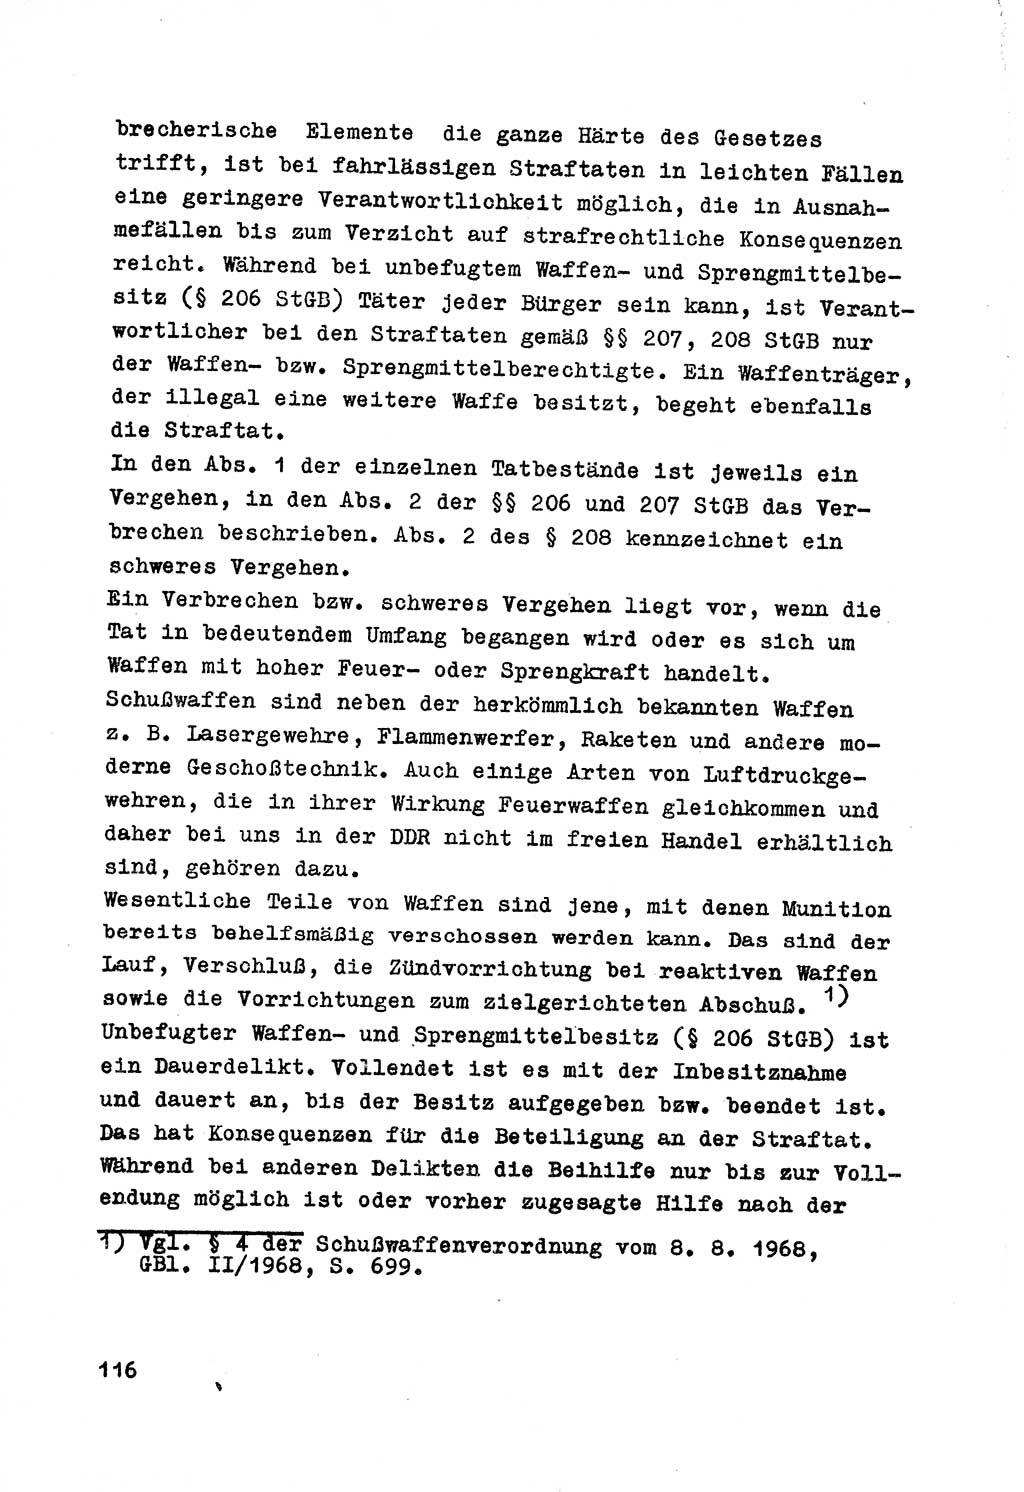 Strafrecht der DDR (Deutsche Demokratische Republik), Besonderer Teil, Lehrmaterial, Heft 7 1970, Seite 116 (Strafr. DDR BT Lehrmat. H. 7 1970, S. 116)